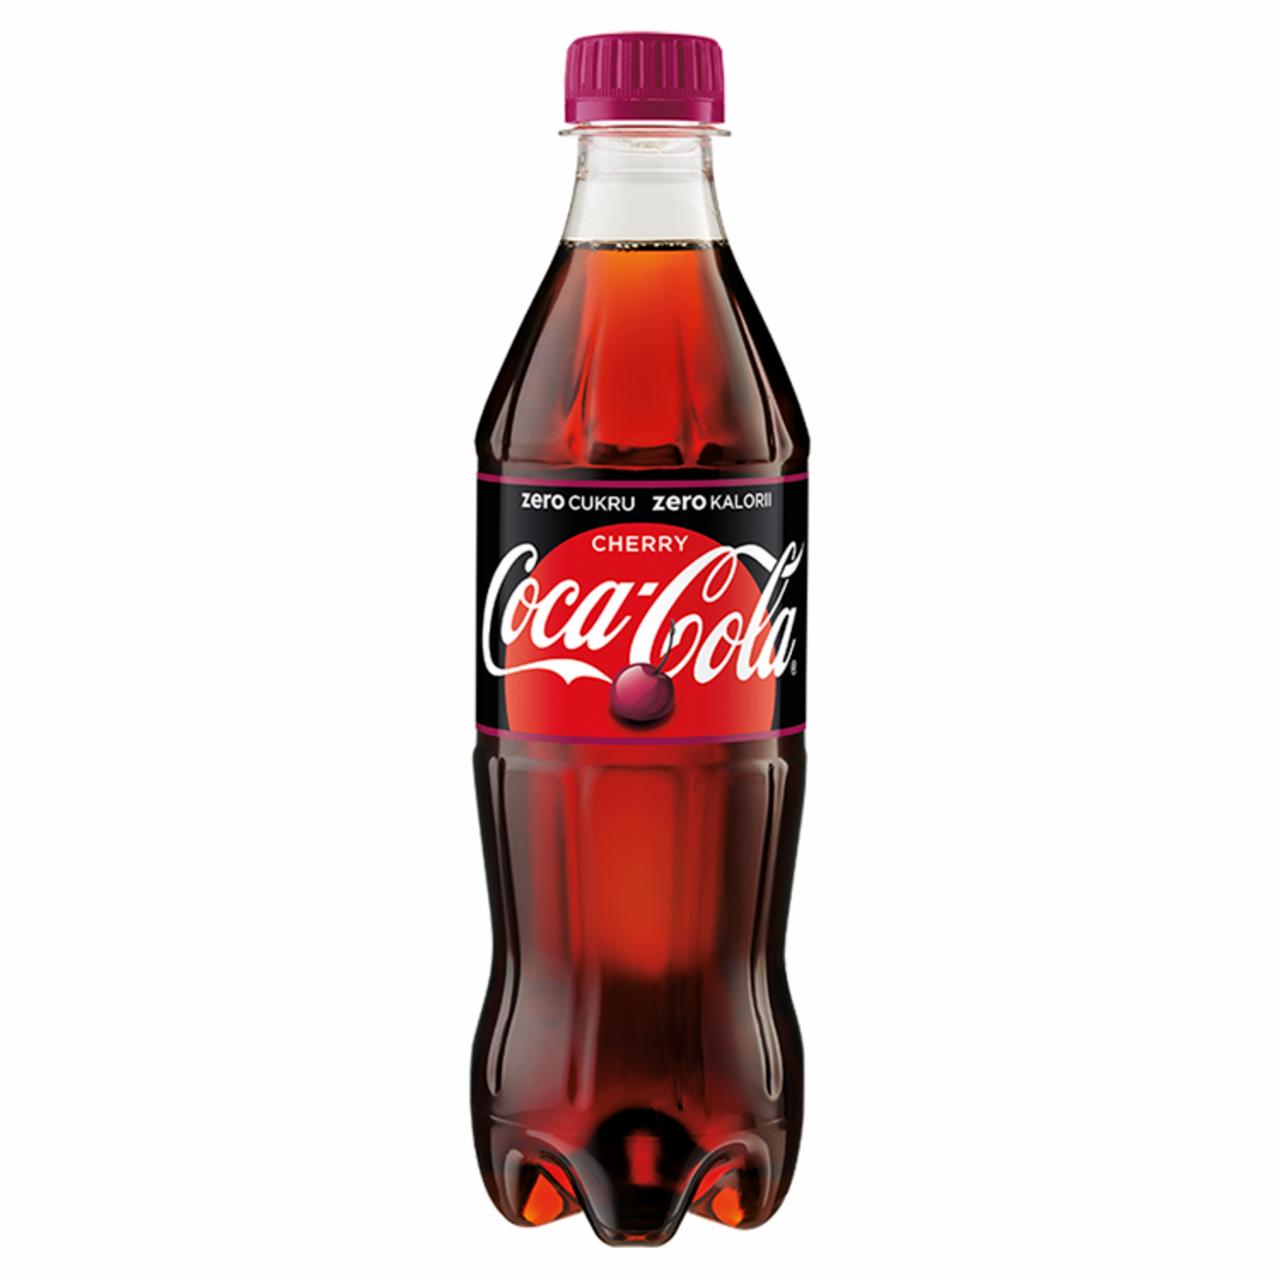 Zdjęcia - Coca-Cola zero Cherry napój gazowany